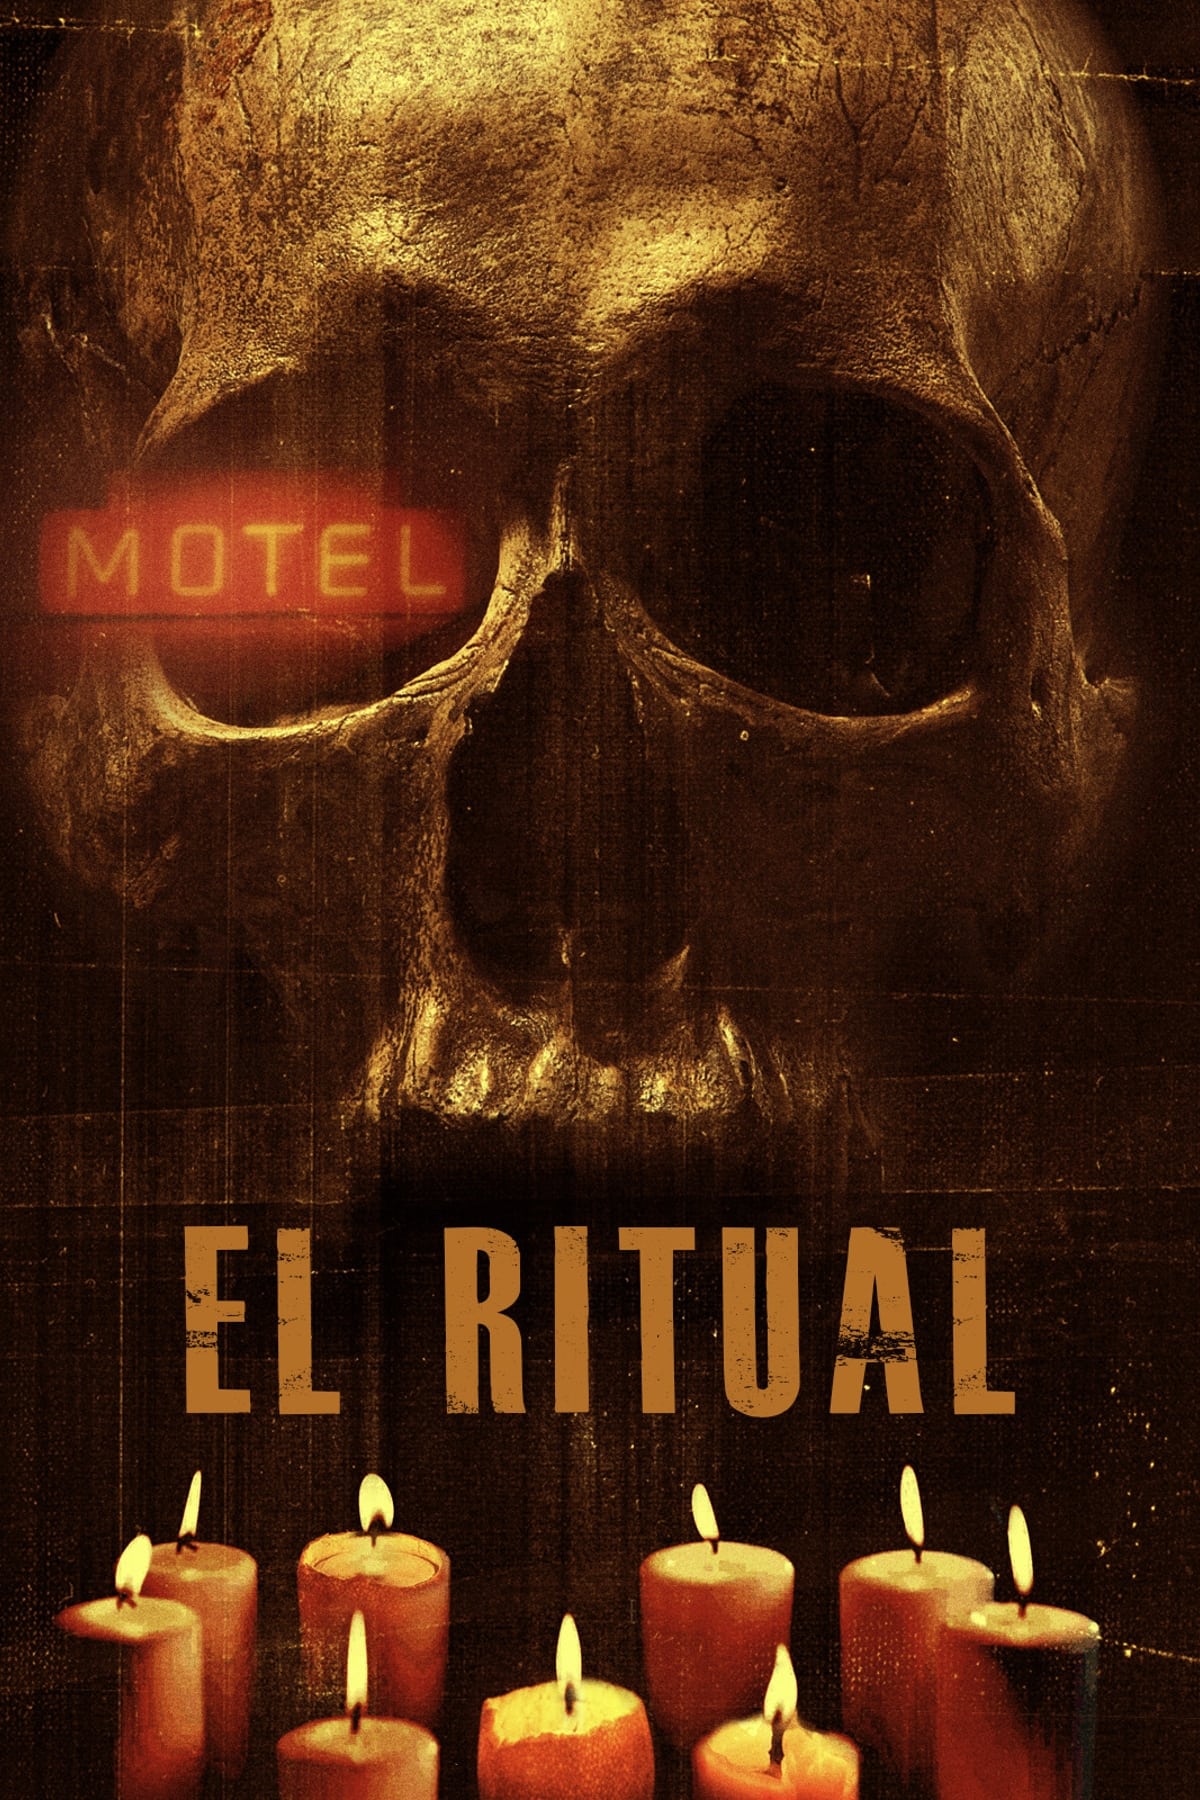 Ritual 2013 [Latino] MEDIAFIRE